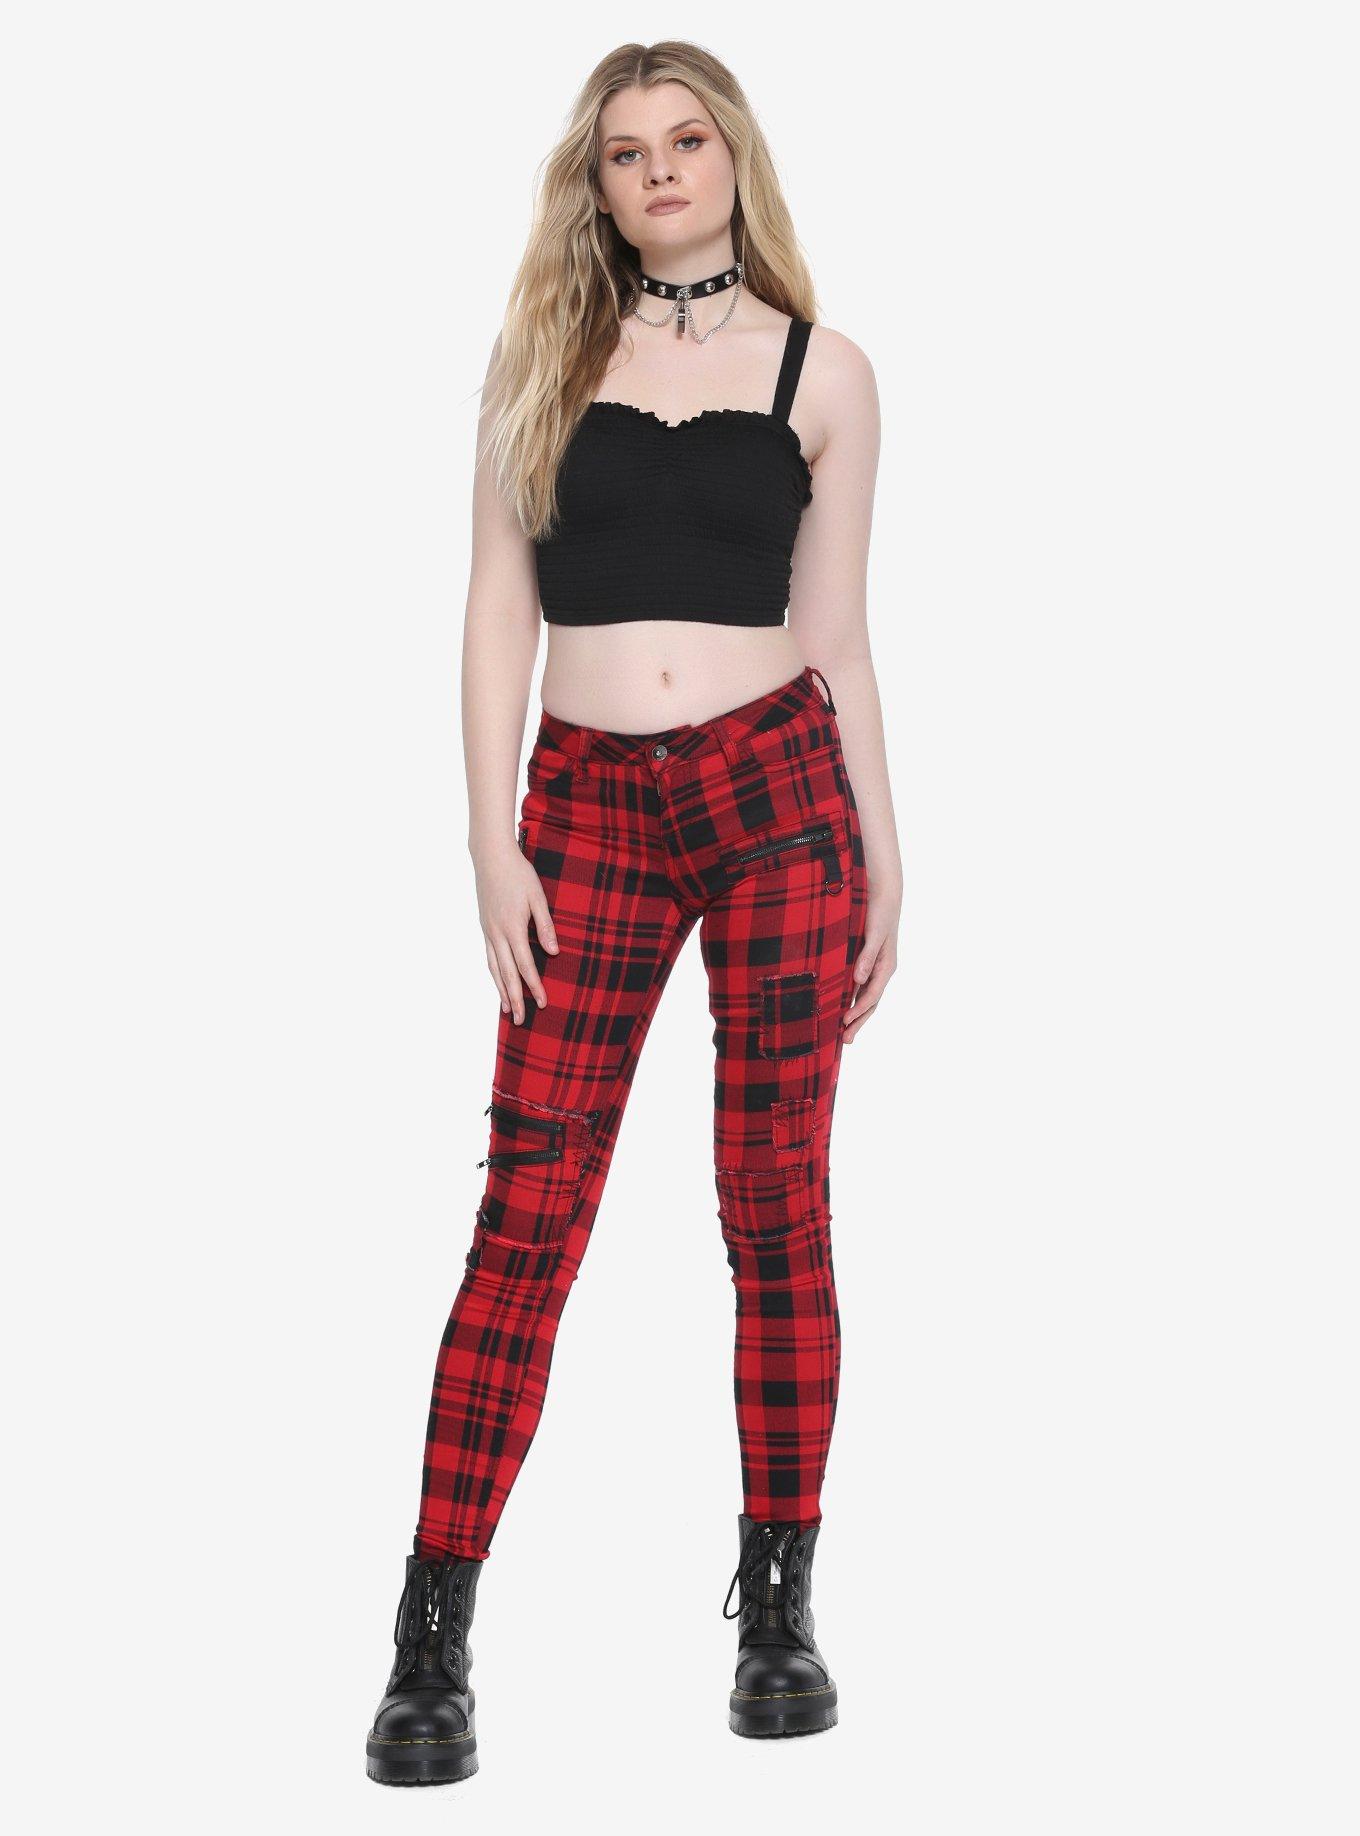 Blackheart Red & Black Plaid Super Skinny Pants Plus Size